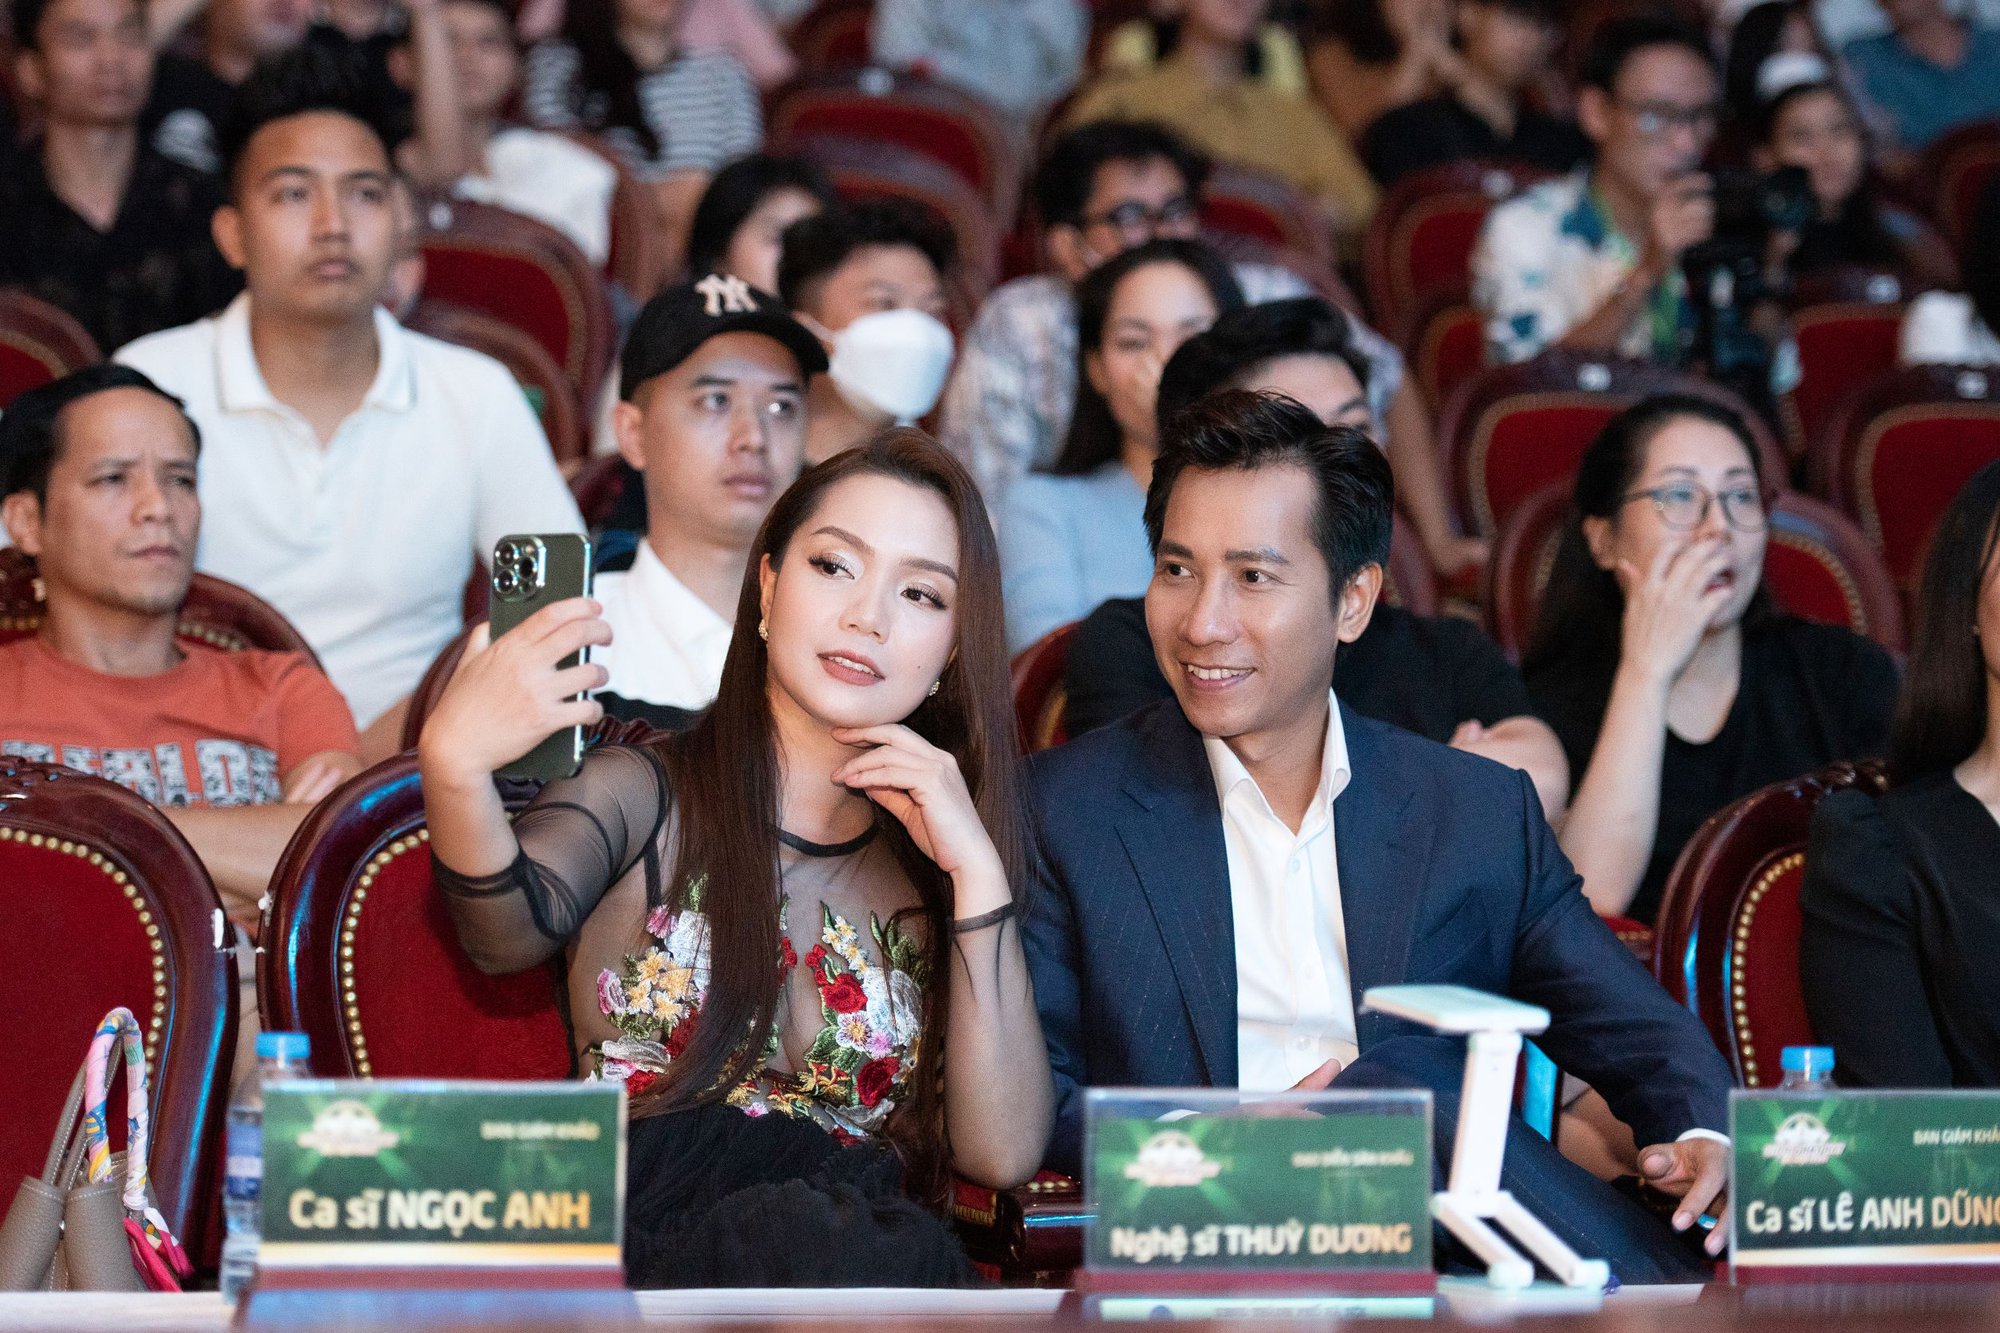 Bị nghi có bầu lần 3, Nguyễn Ngọc Anh làm điều bất ngờ để “giải oan” - Ảnh 6.